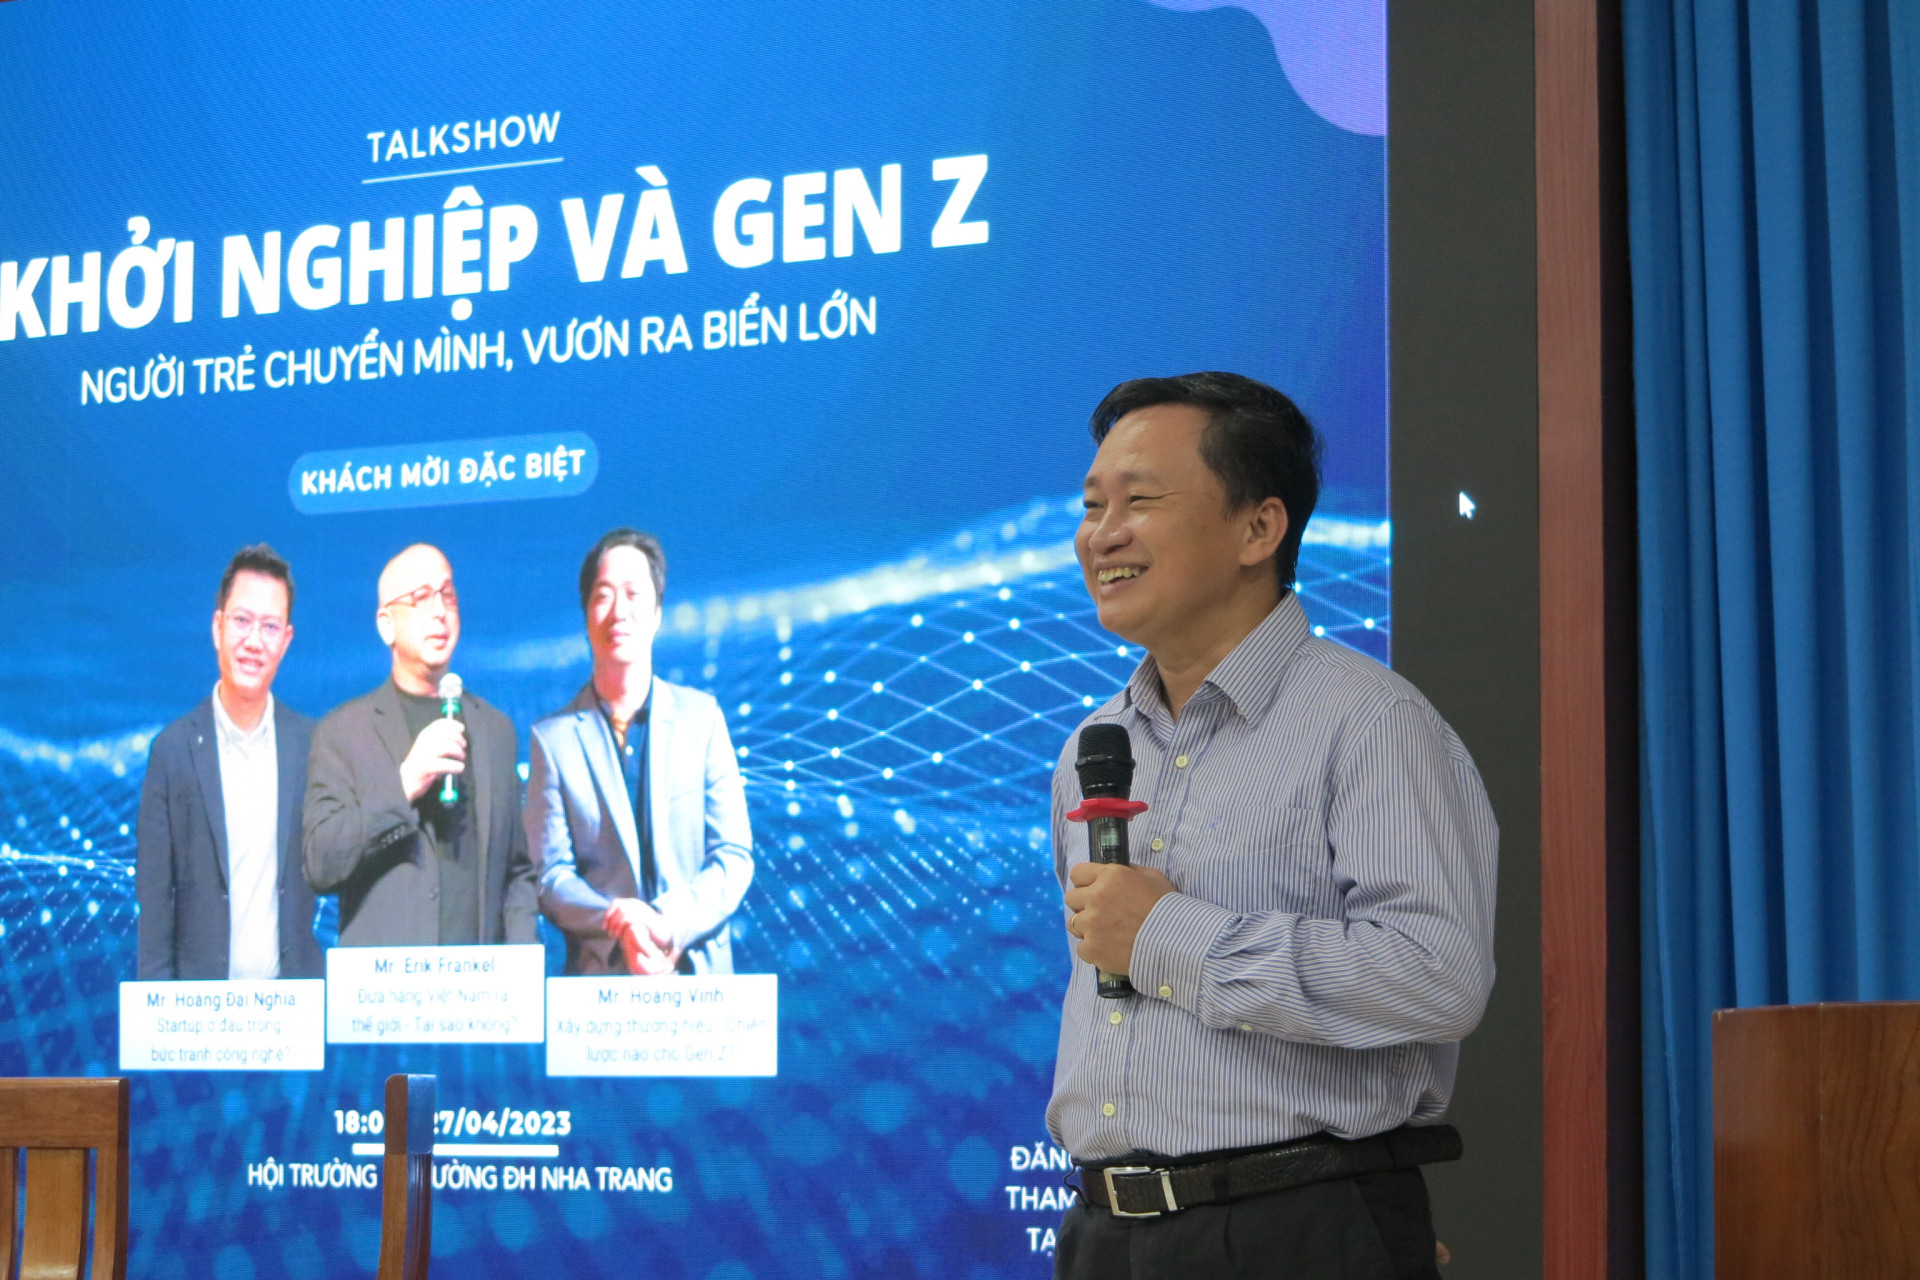 Tiến sĩ Quách Hoài Nam - Phó Hiệu trưởng nhà trường phát biểu tại chương trình. 